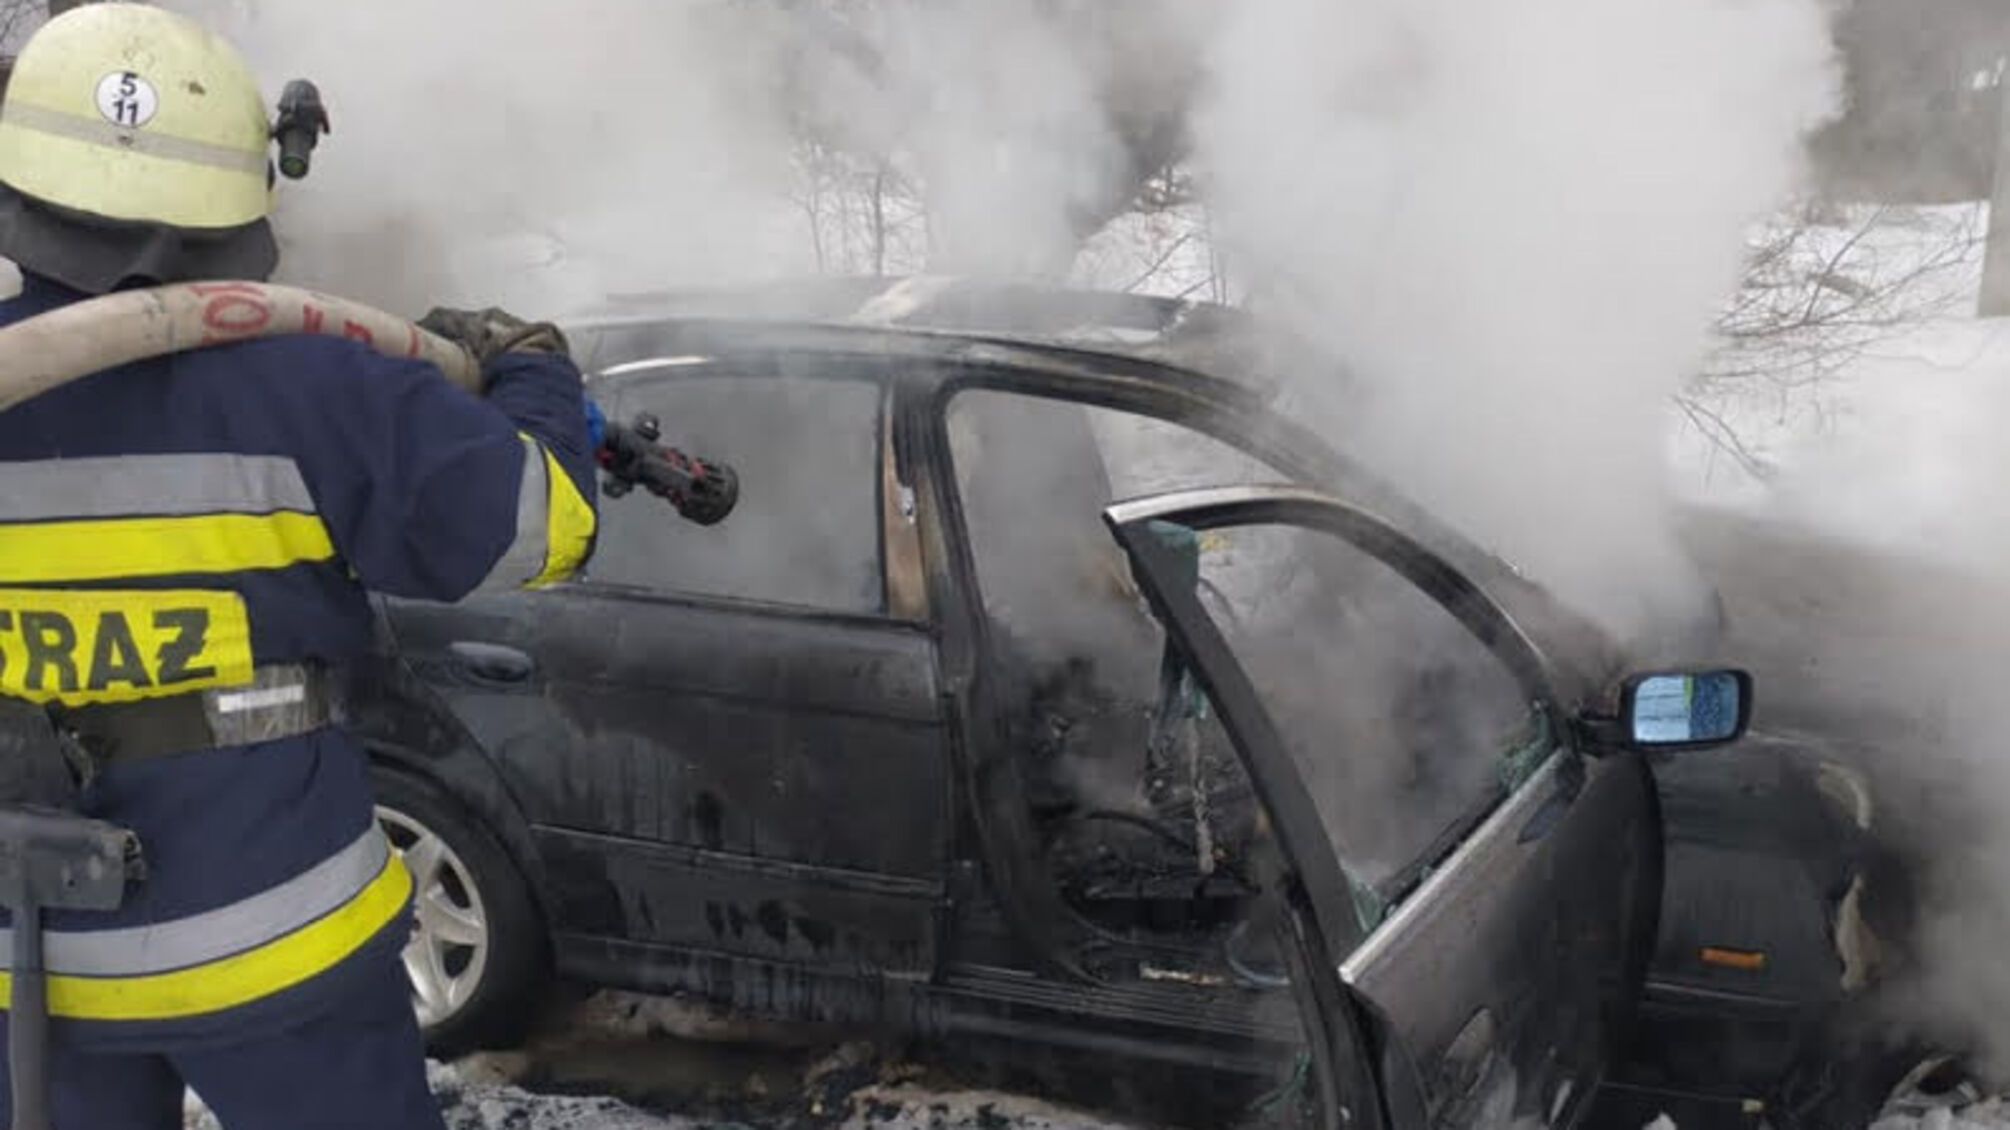 Львівська область: вогнеборці ліквідували займання в автомобілі